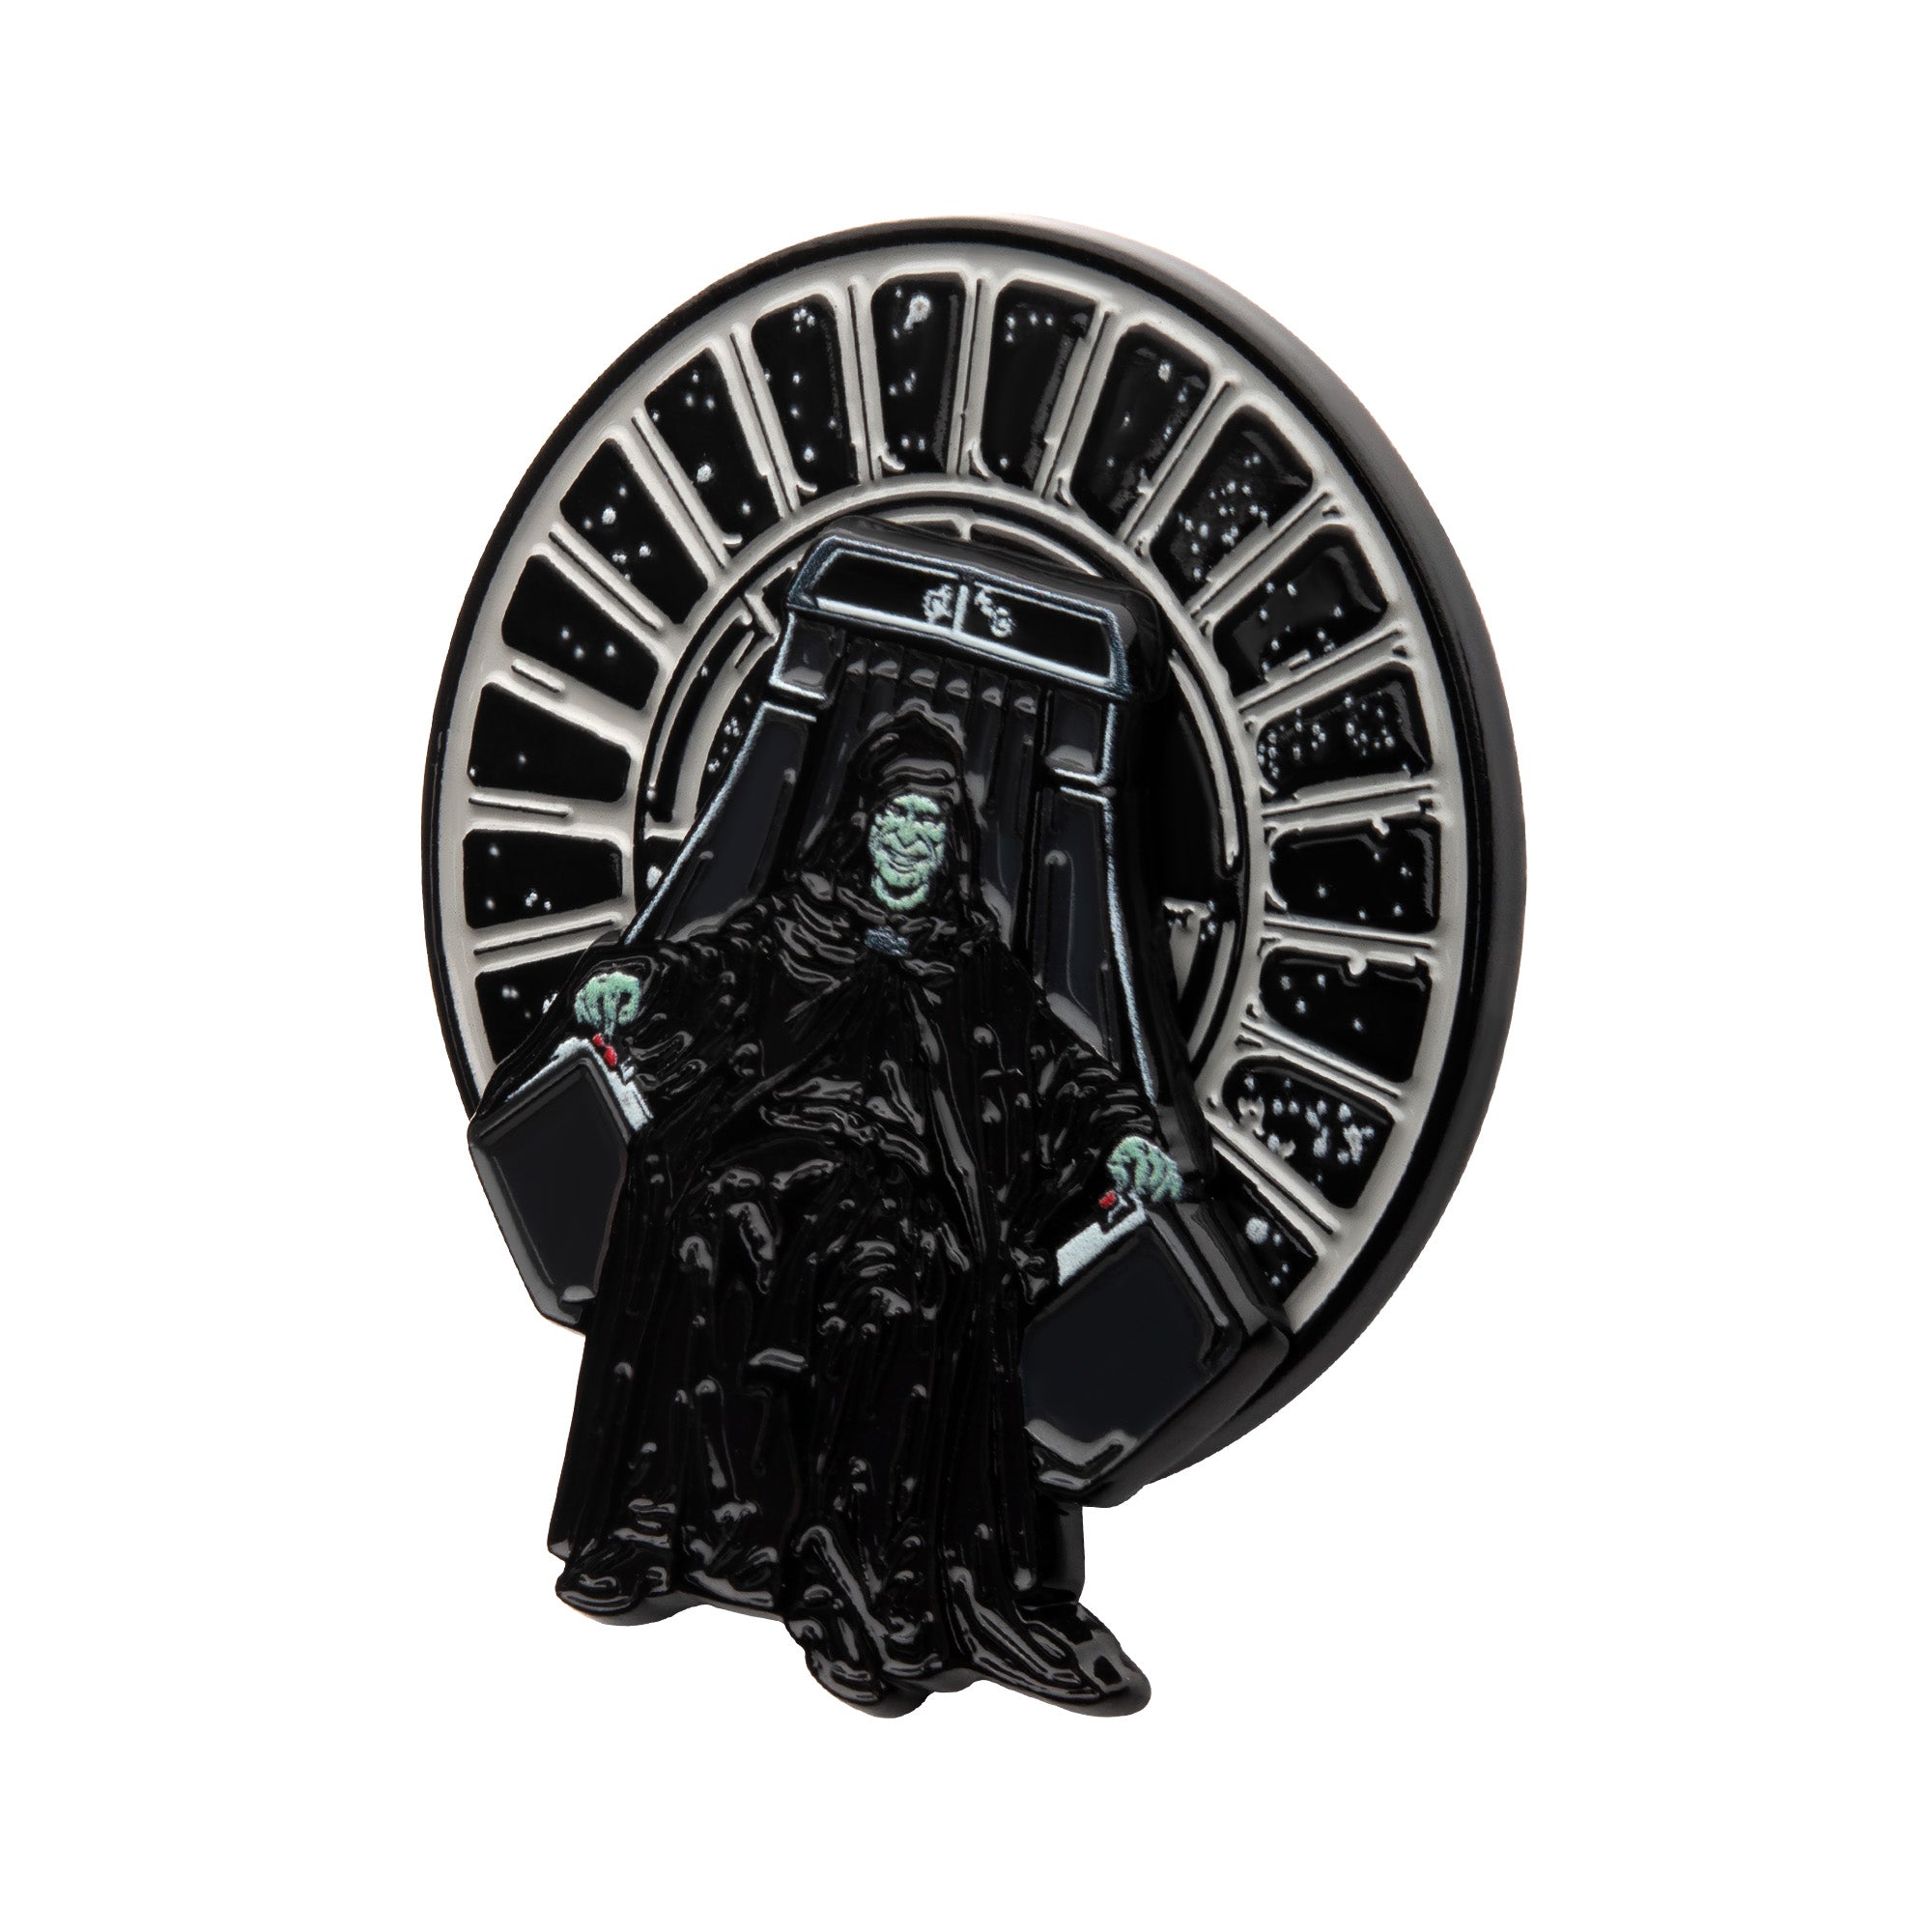 Star Wars Emperor Spinning Pin